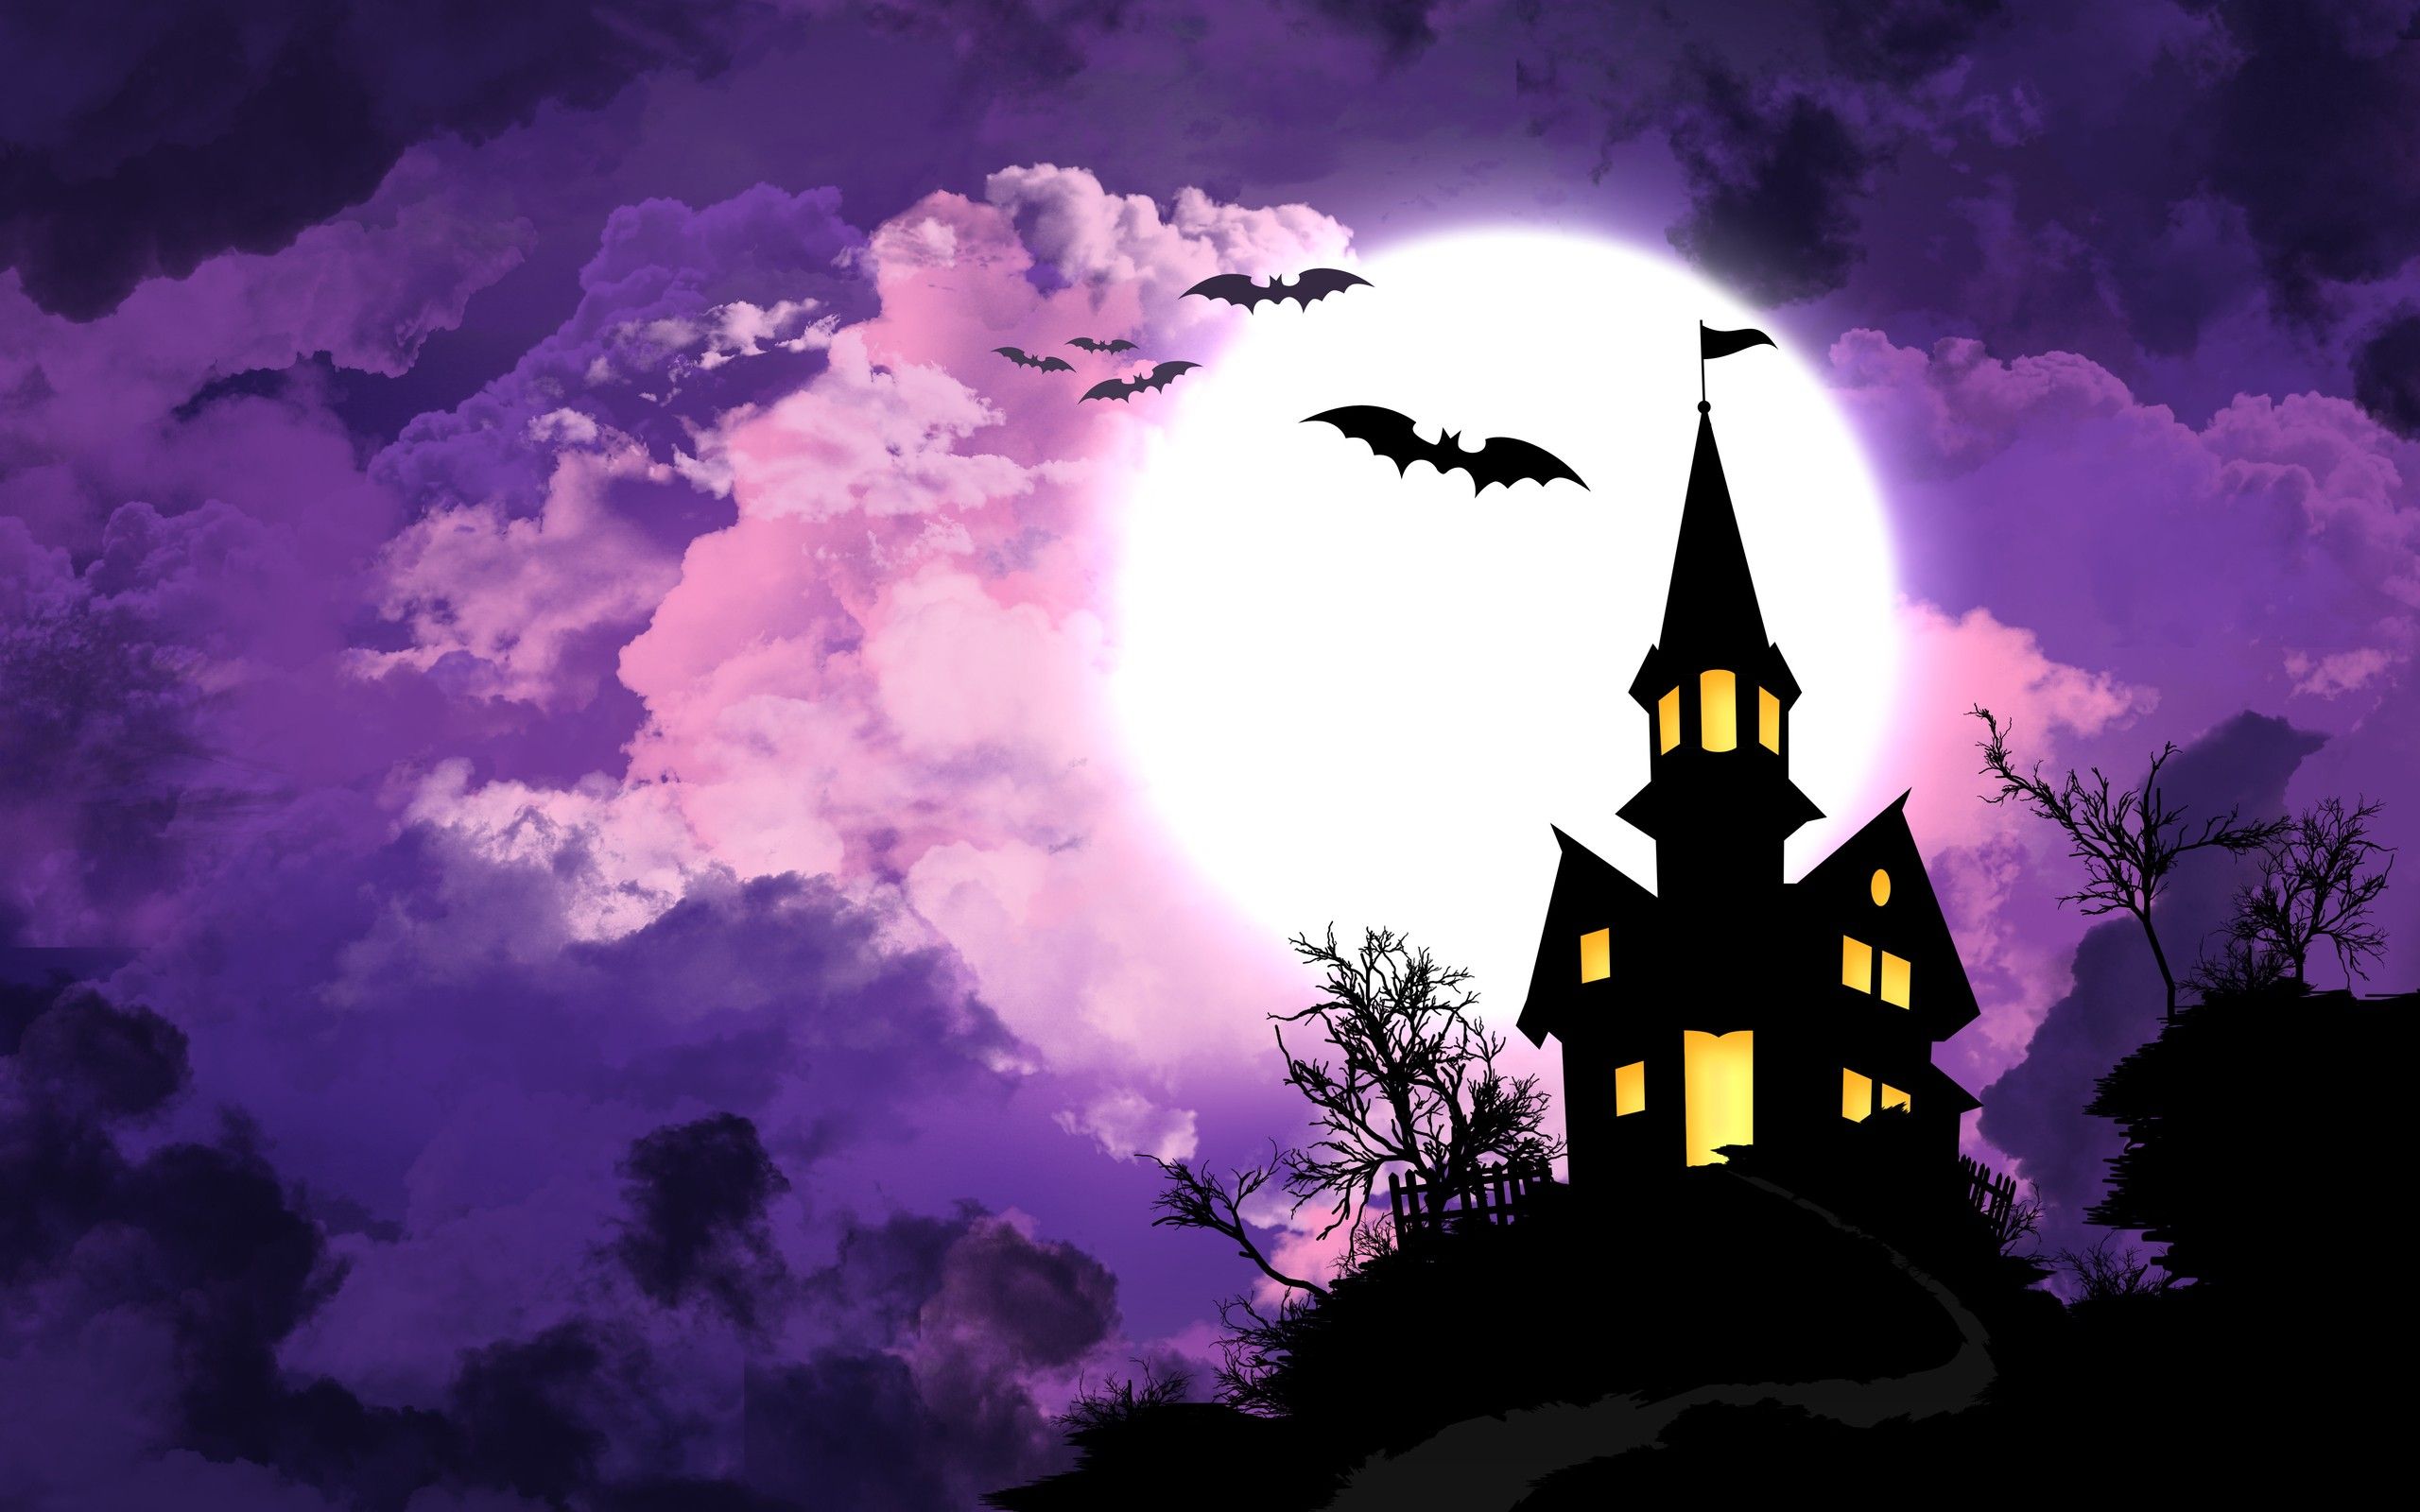 Halloween House & Bats - Wallpaper #37480